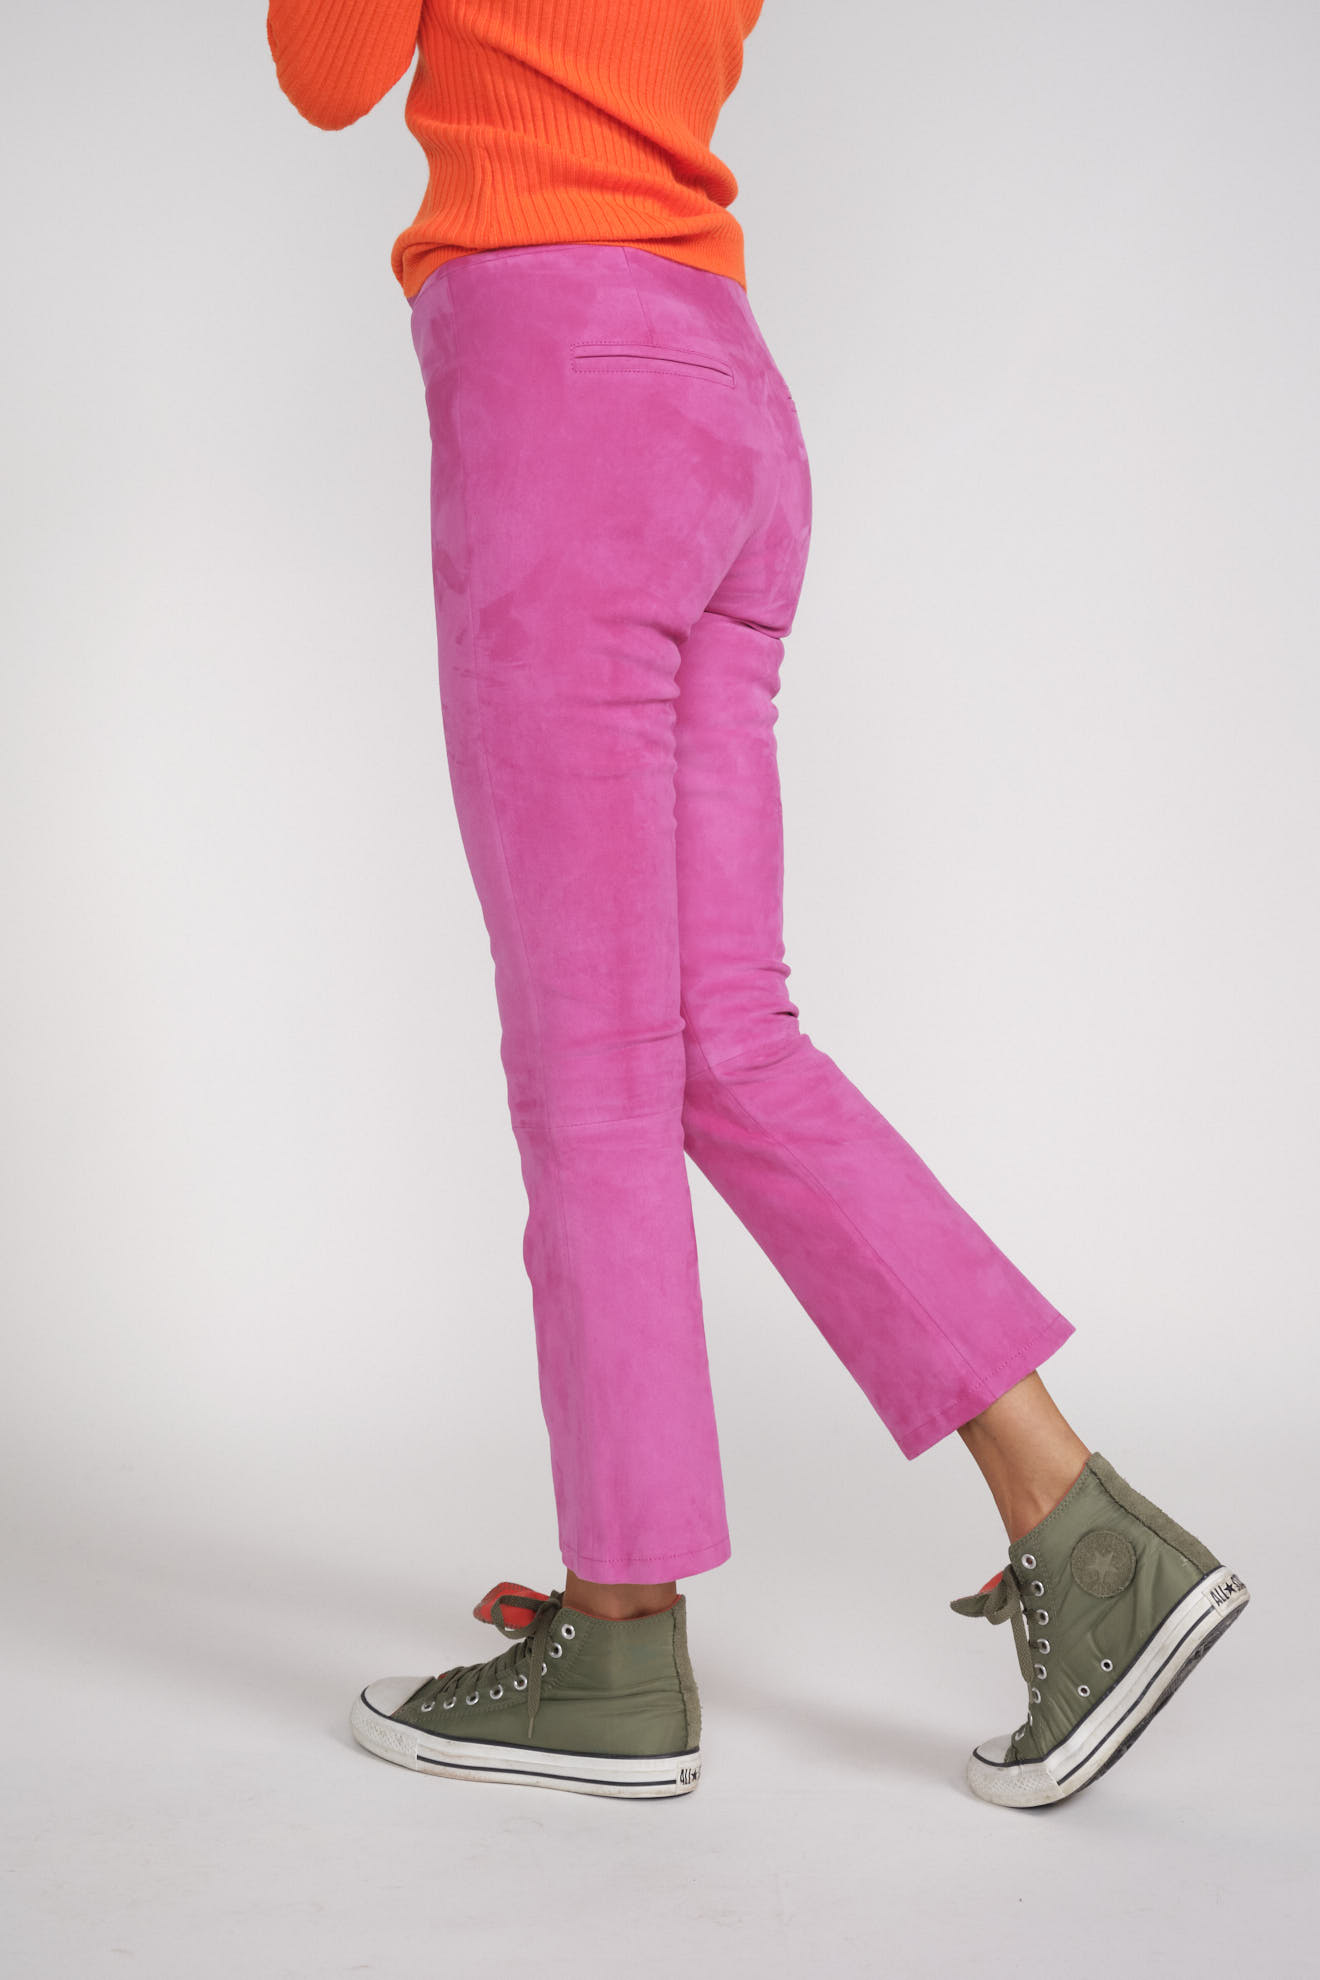 Arma Pantaloni Lively Colore: taupe Taglia: 36 grigio 36